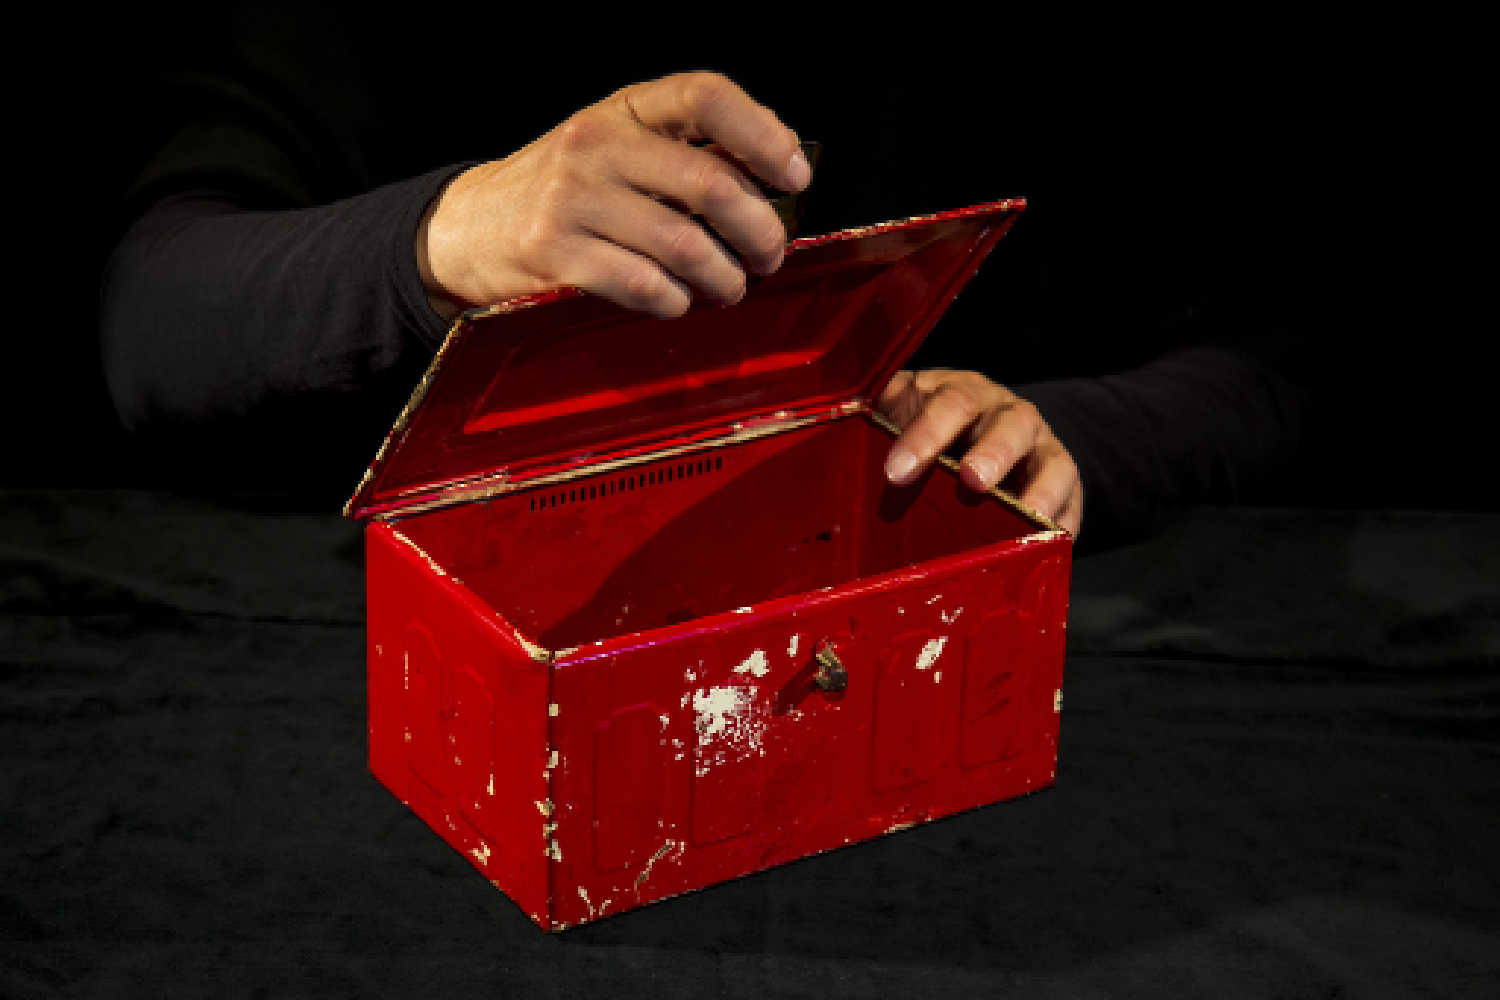 Dunkel gekleideter Performer öffnet eine rote Kiste. Von ihm sind nur die Hände zu sehen.